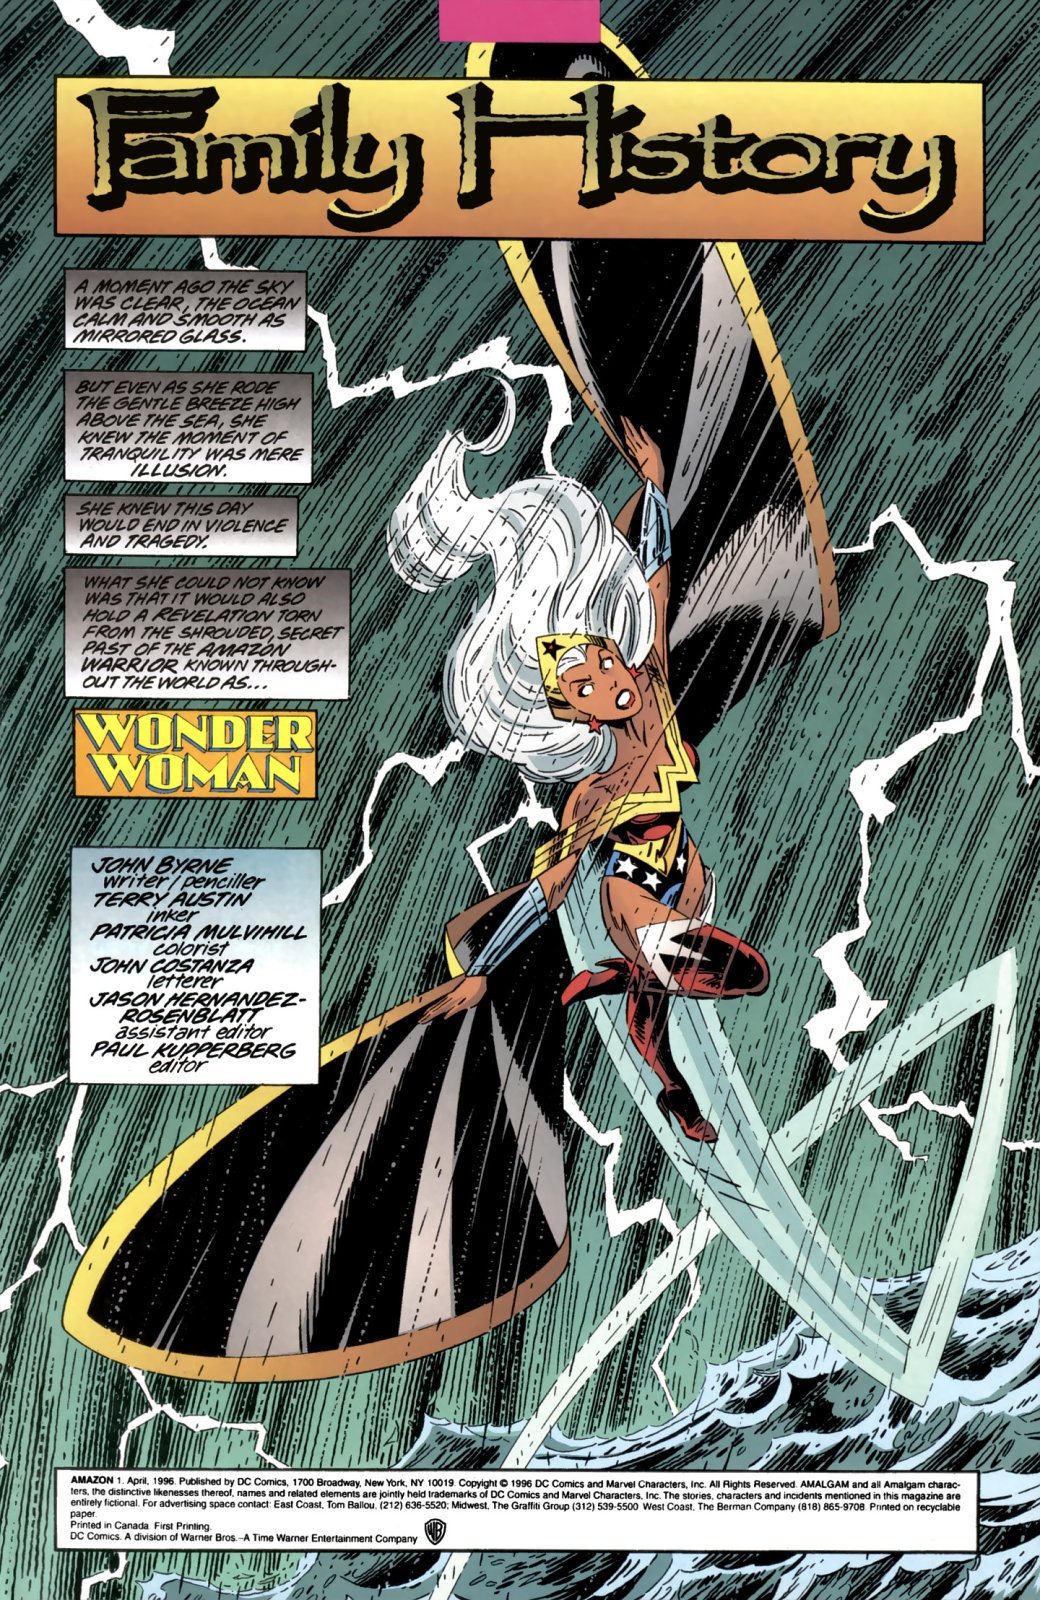 Галерея 10 крутых супергероев-гибридов из кроссовера Marvel и DC — Amalgam Comics - 1 фото